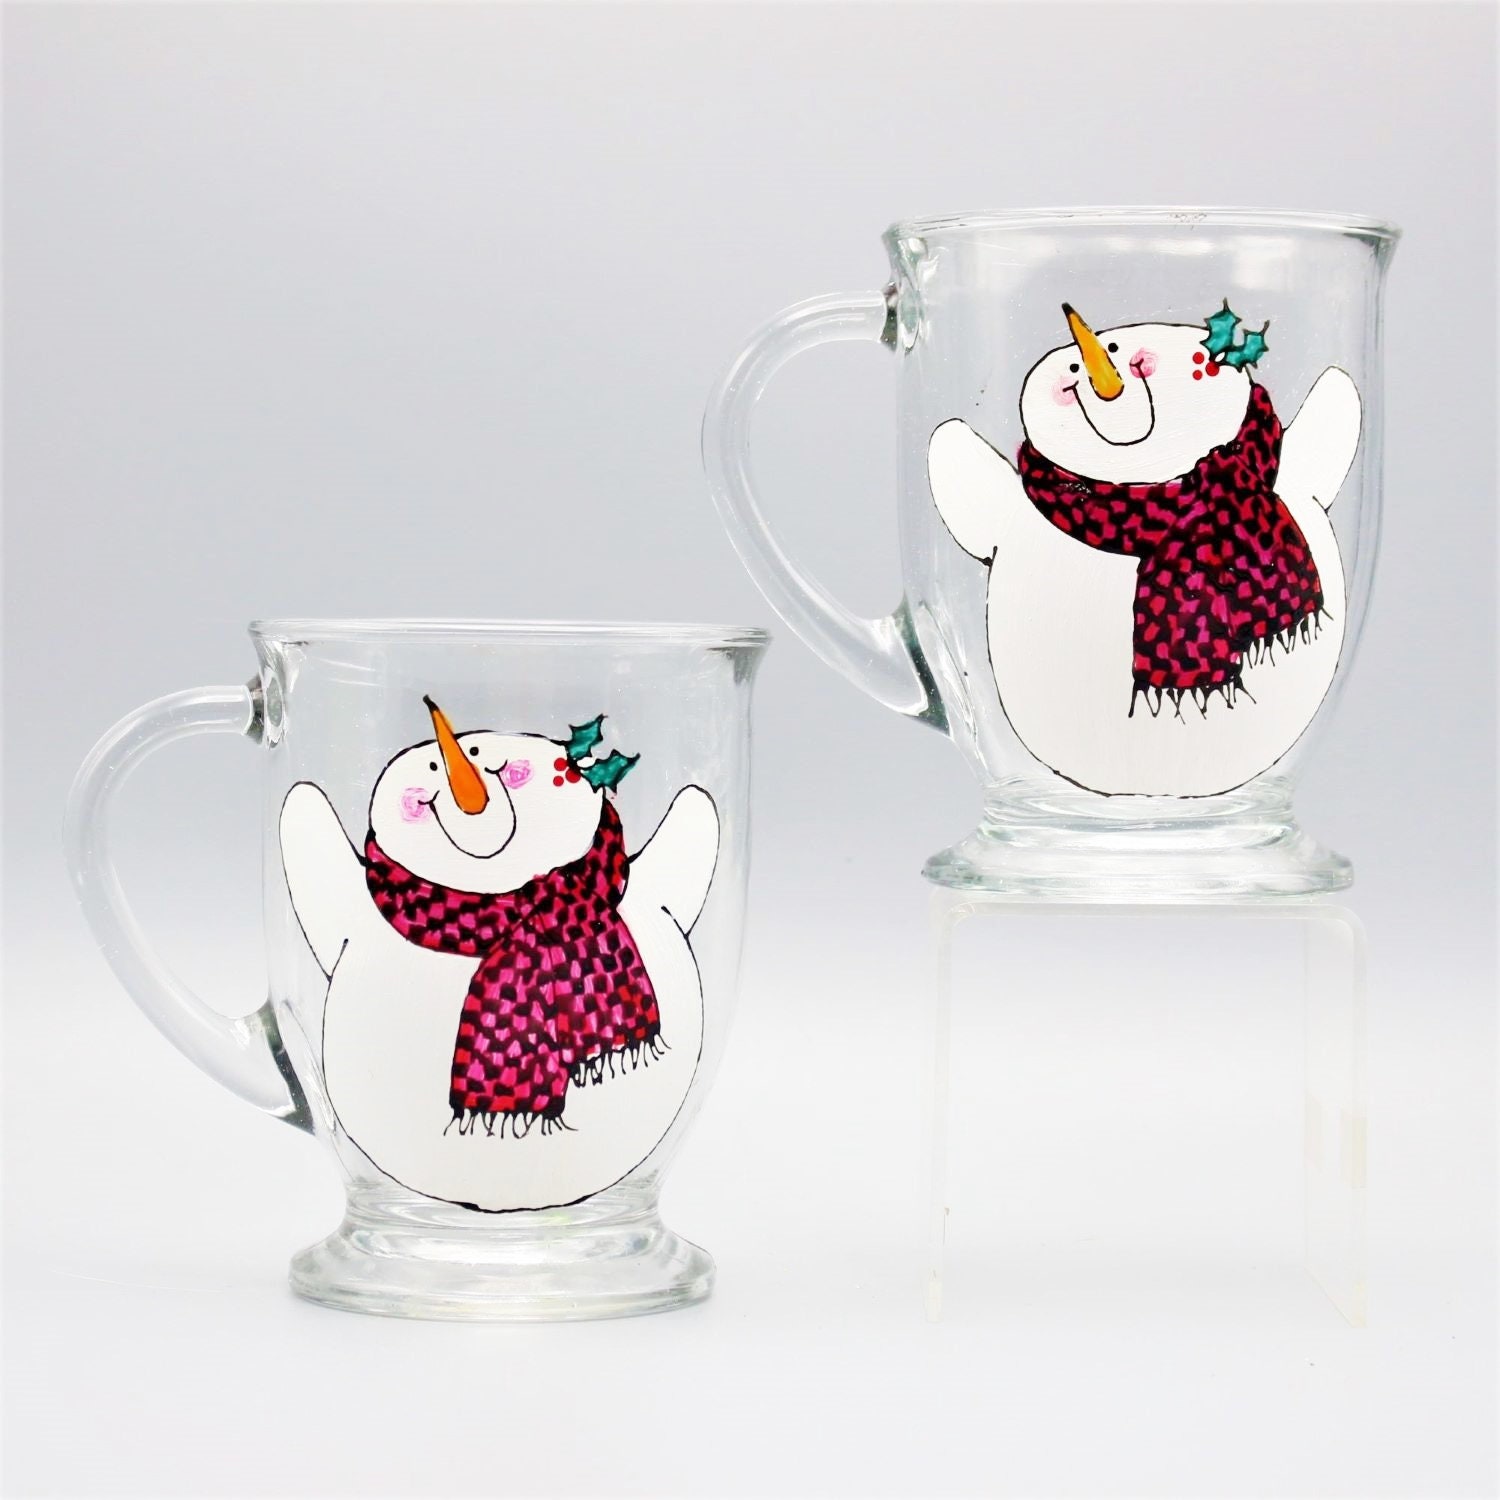 Handmade Ceramic Snowman Espresso Mug - Unique Christmas Coffee Cups –  Enjoy Ceramic Art